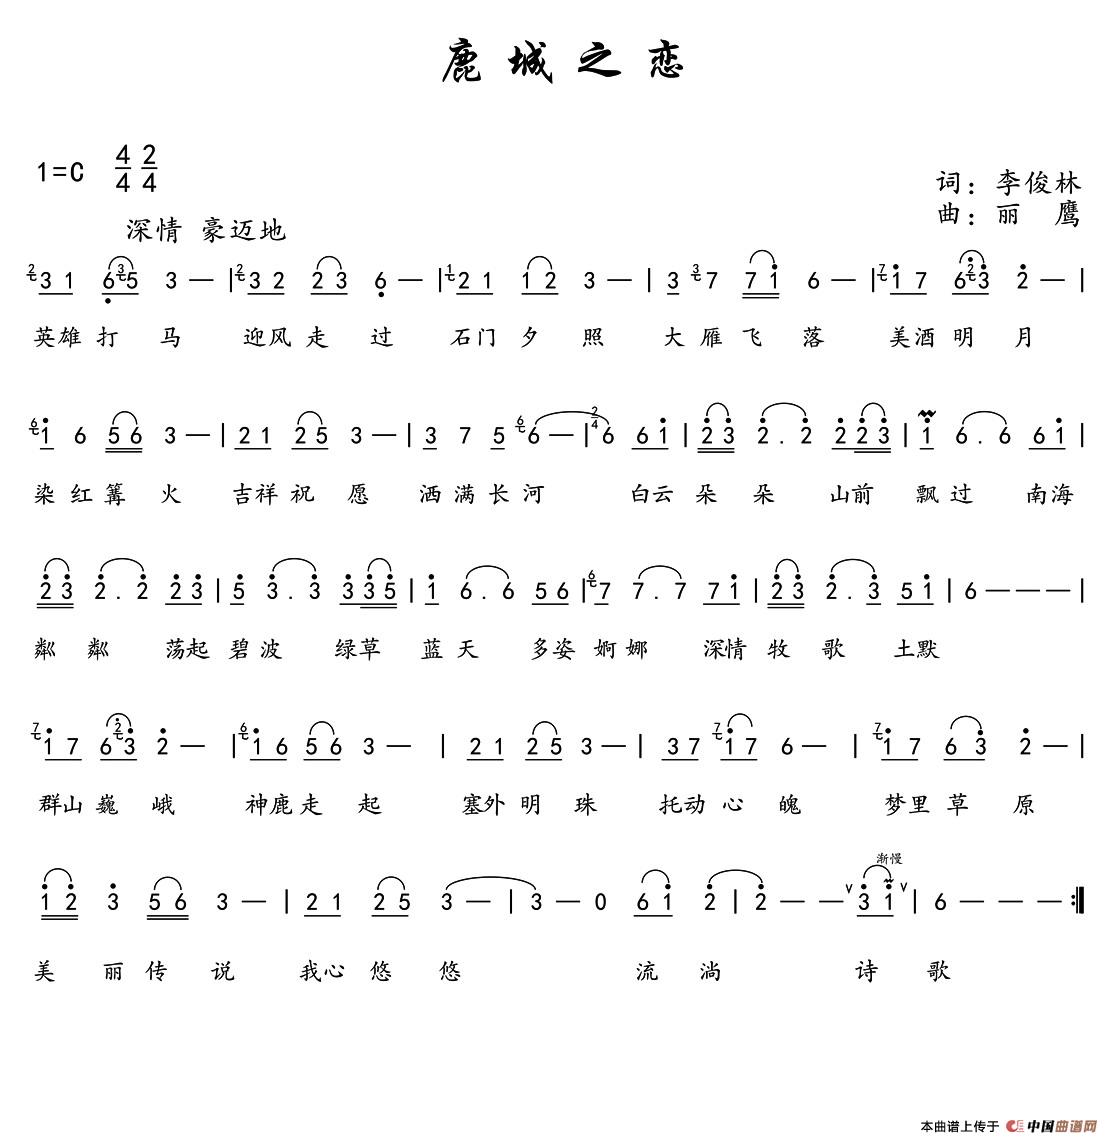 鹿城之恋(1)_原文件名：鹿城之恋 Score.jpg